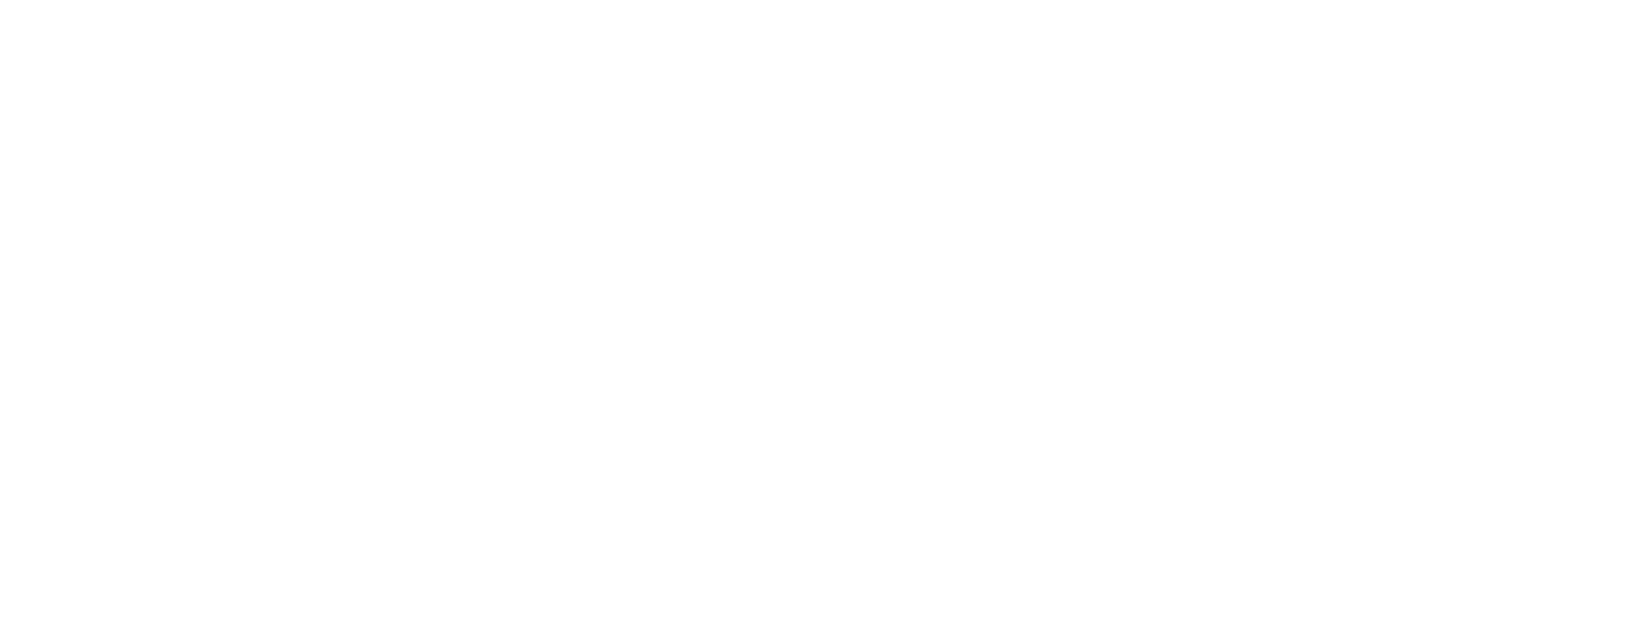 The Tib Bar Guy logo